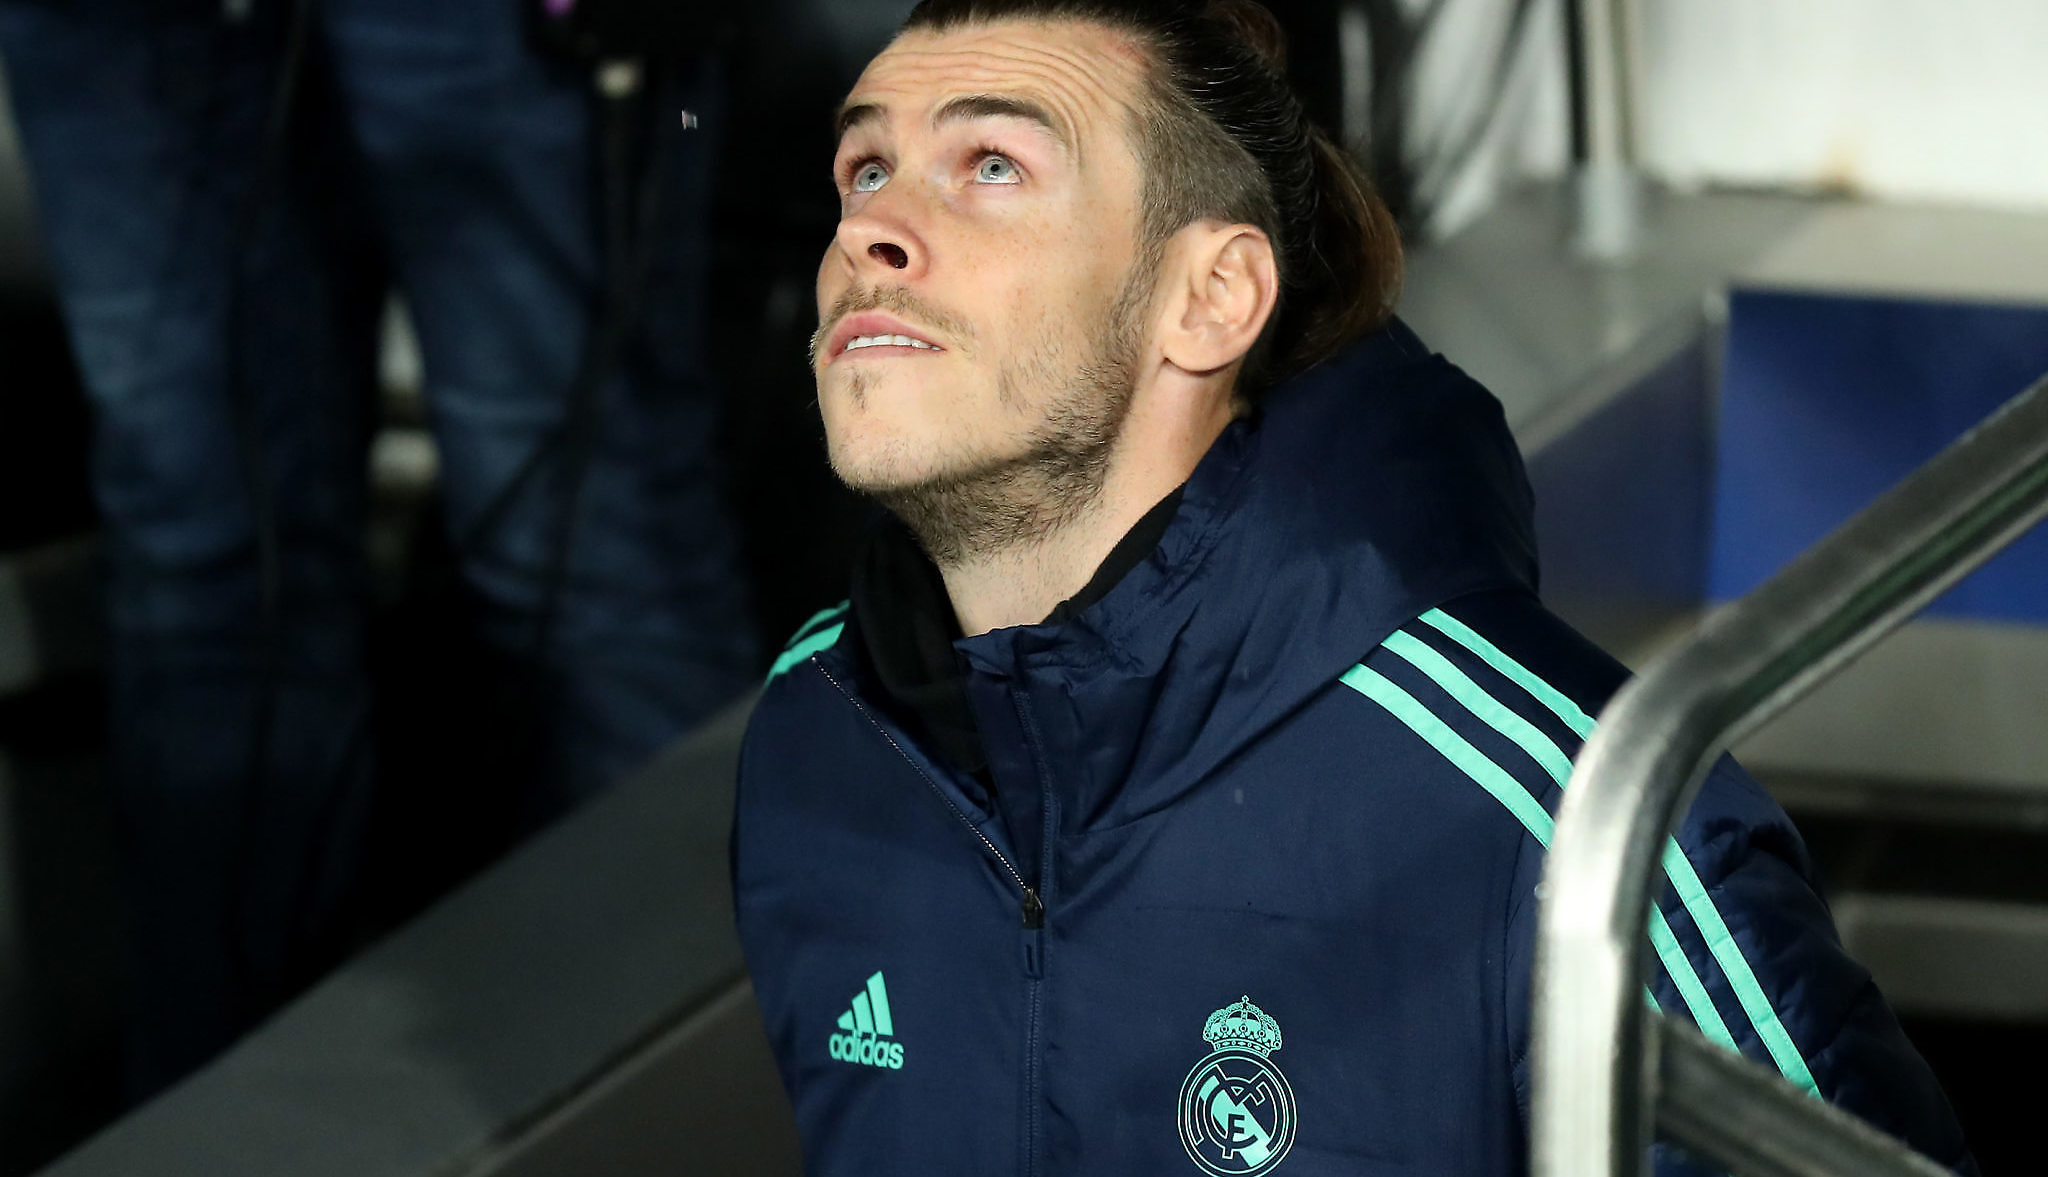 Opinión | Bale los vale… Y los valdrá siempre